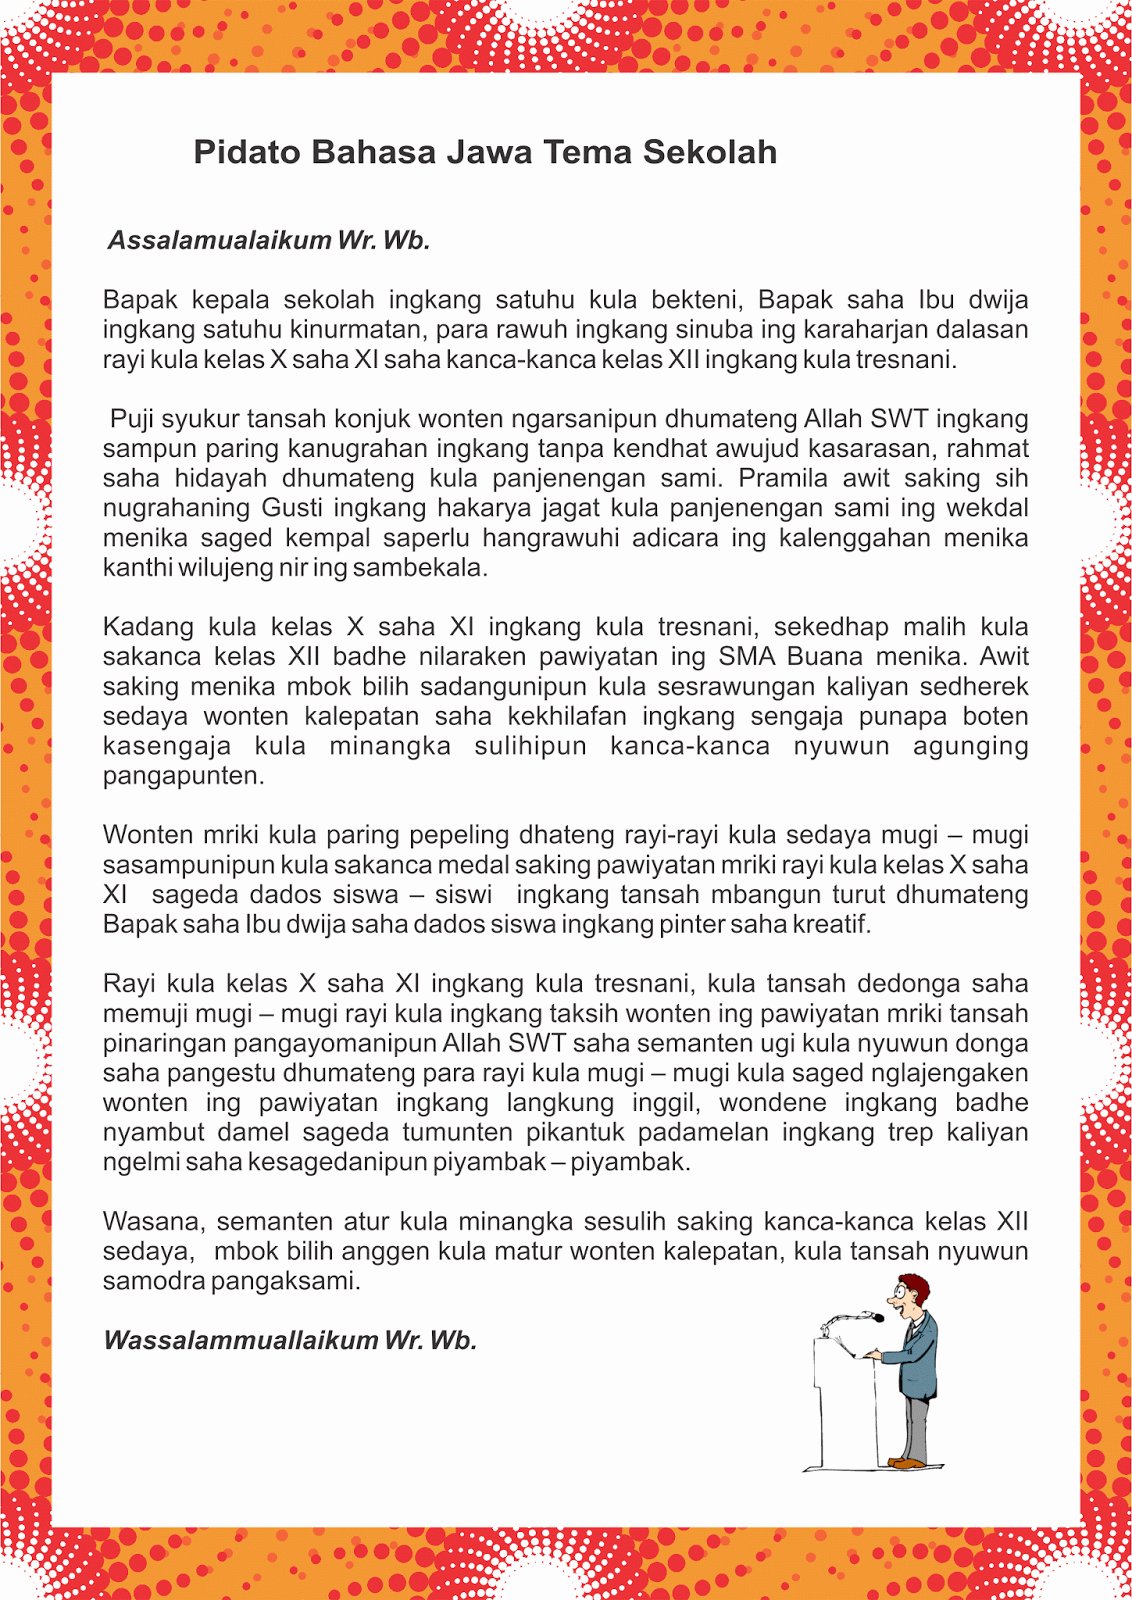 Contoh Pidato Bahasa Jawa Singkat - Keywordsfind.com